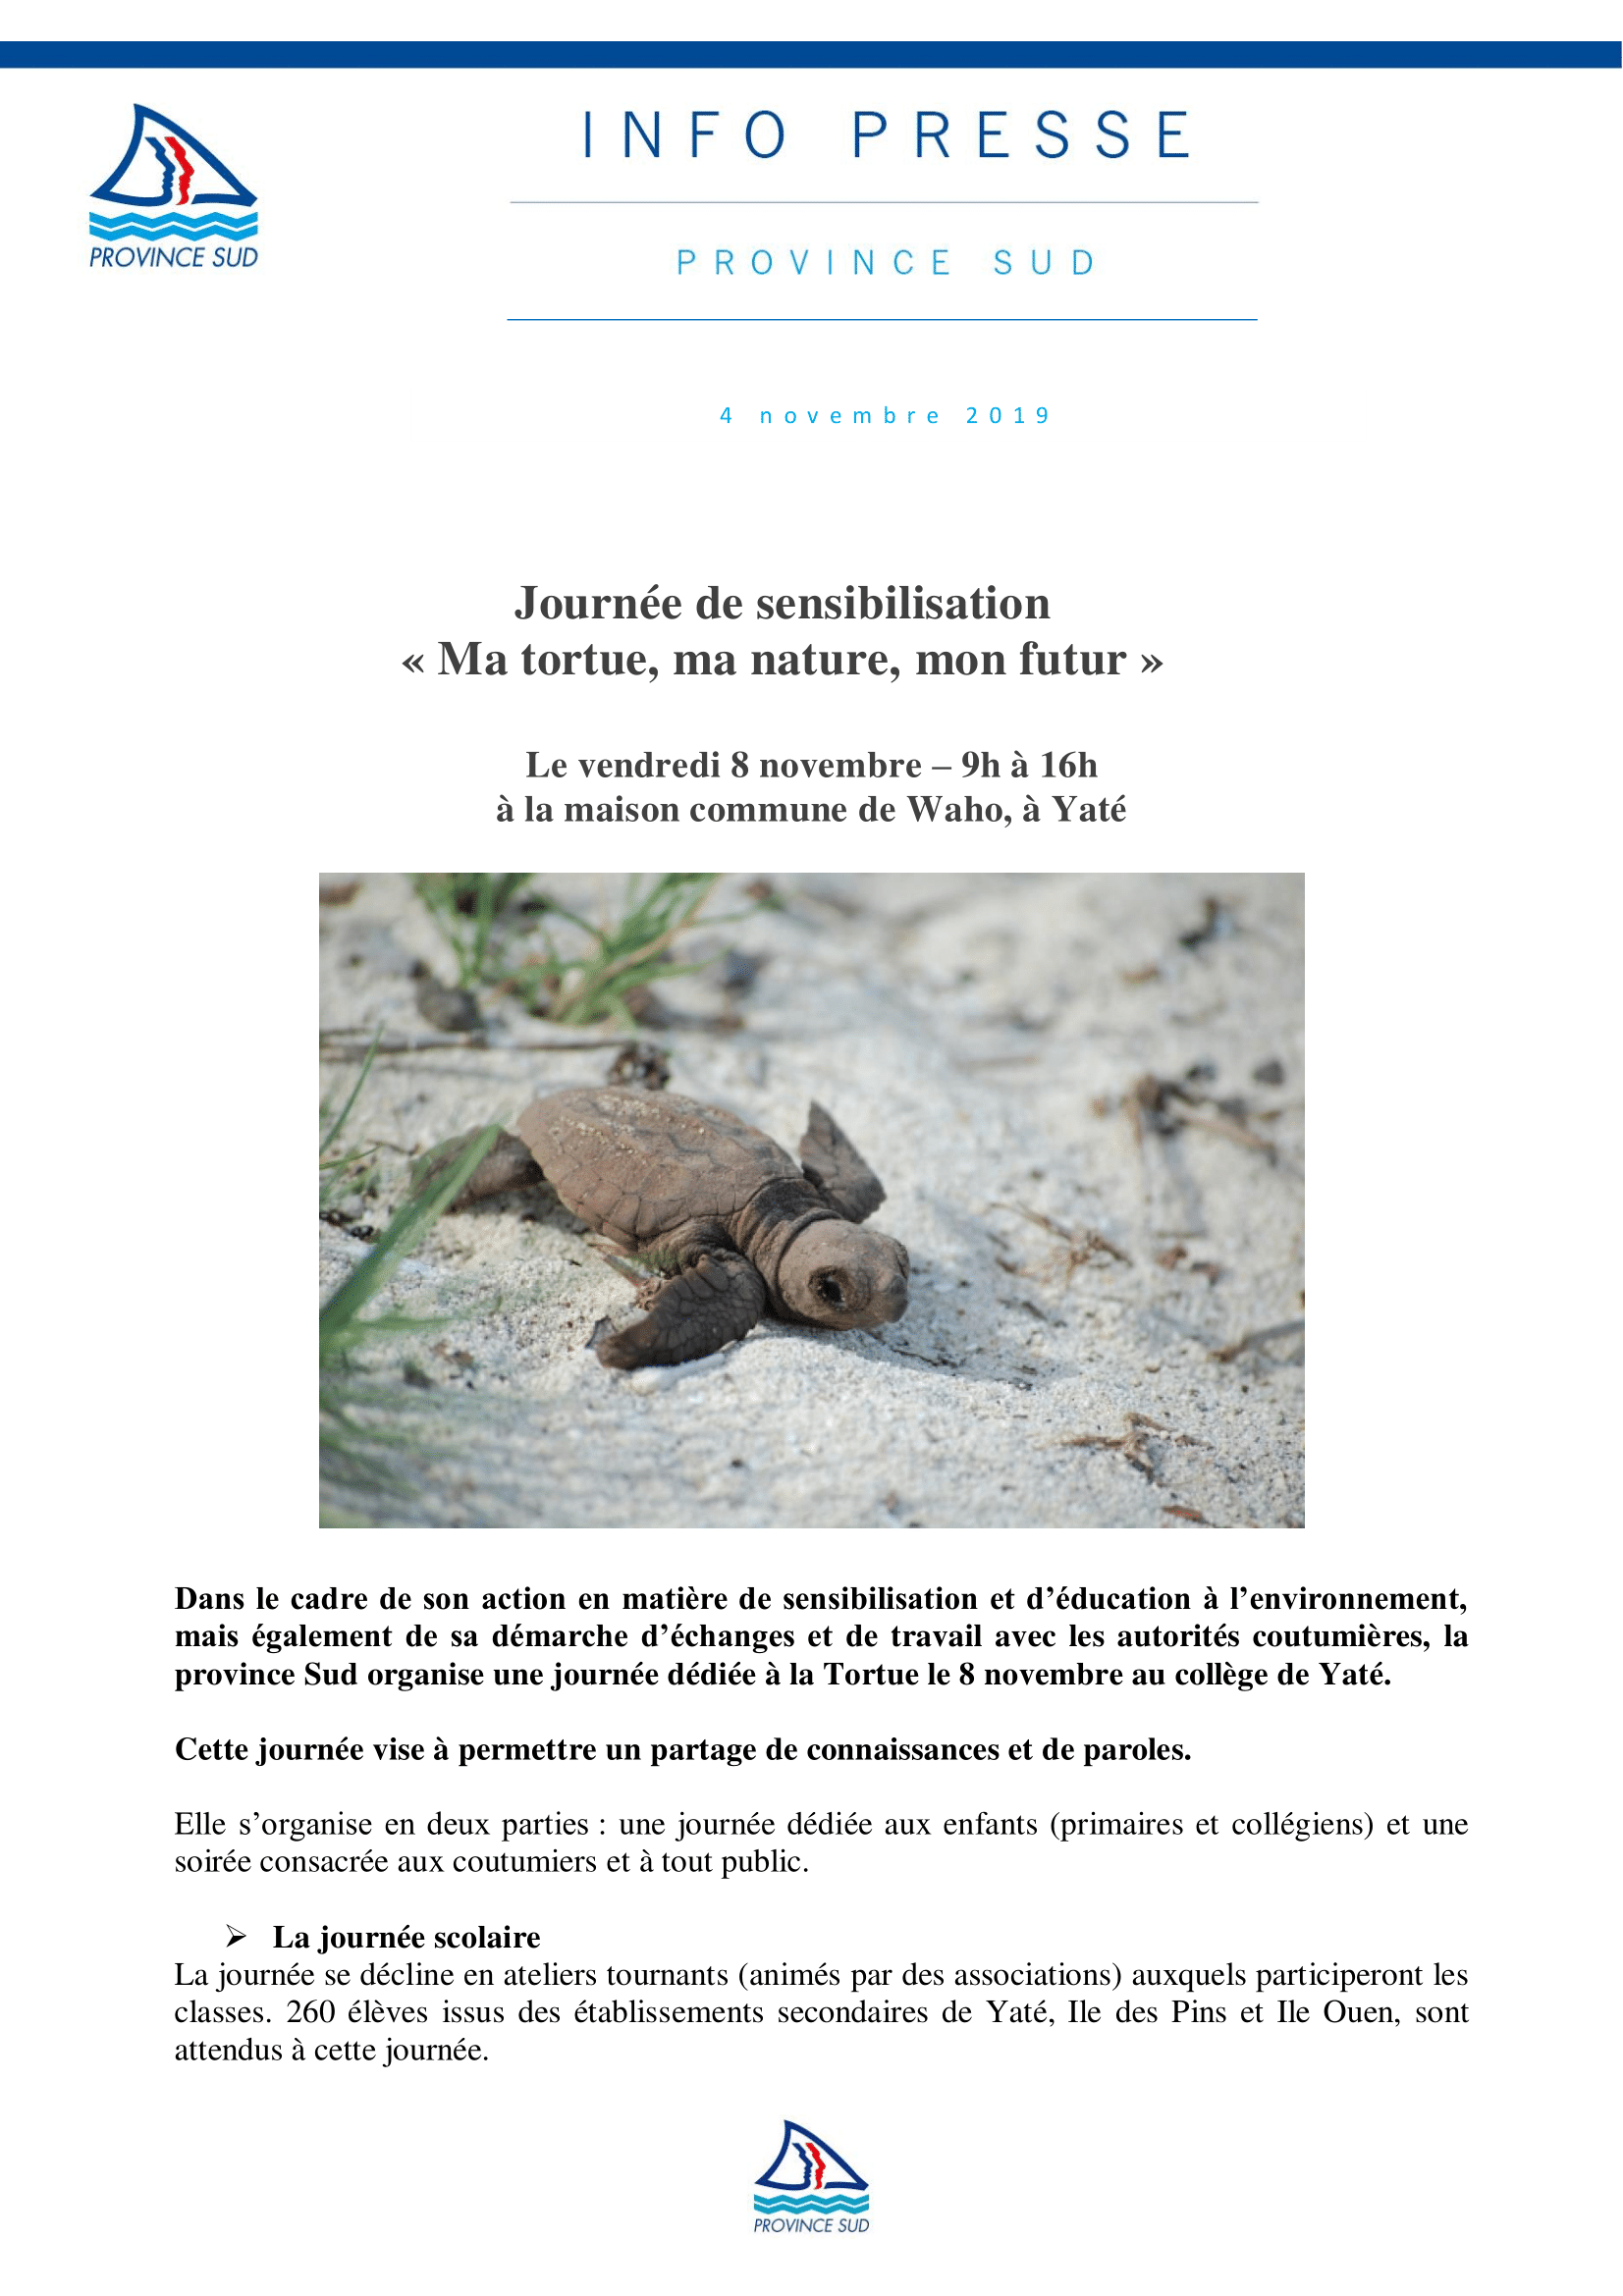  Journée de sensibilisation  « Ma tortue, ma nature, mon futur »  Le vendredi 8 novembre – 9h à 16h  à la maison commune de Waho, à Yaté